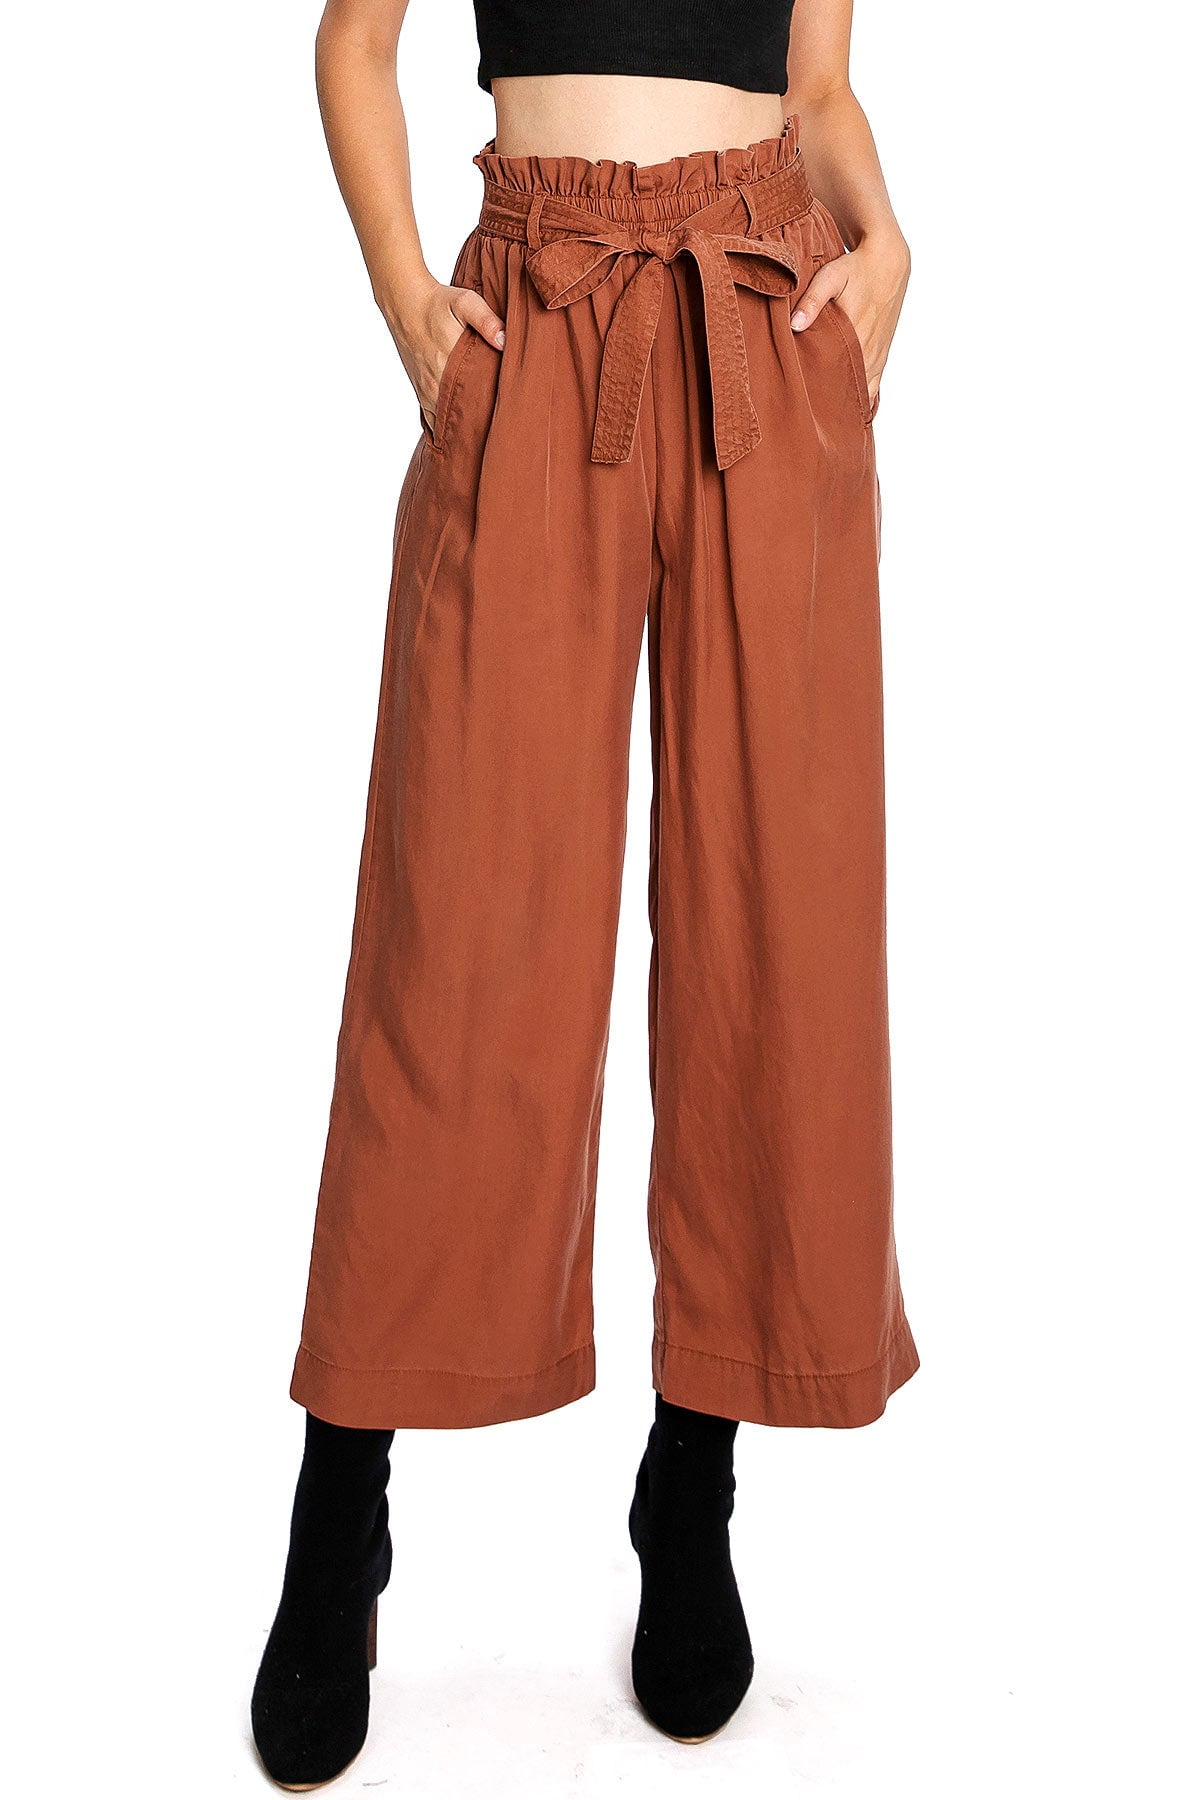 Women's Super High-Rise Wide Leg Linen Culotte Pants - A New Day Red XXL |  eBay